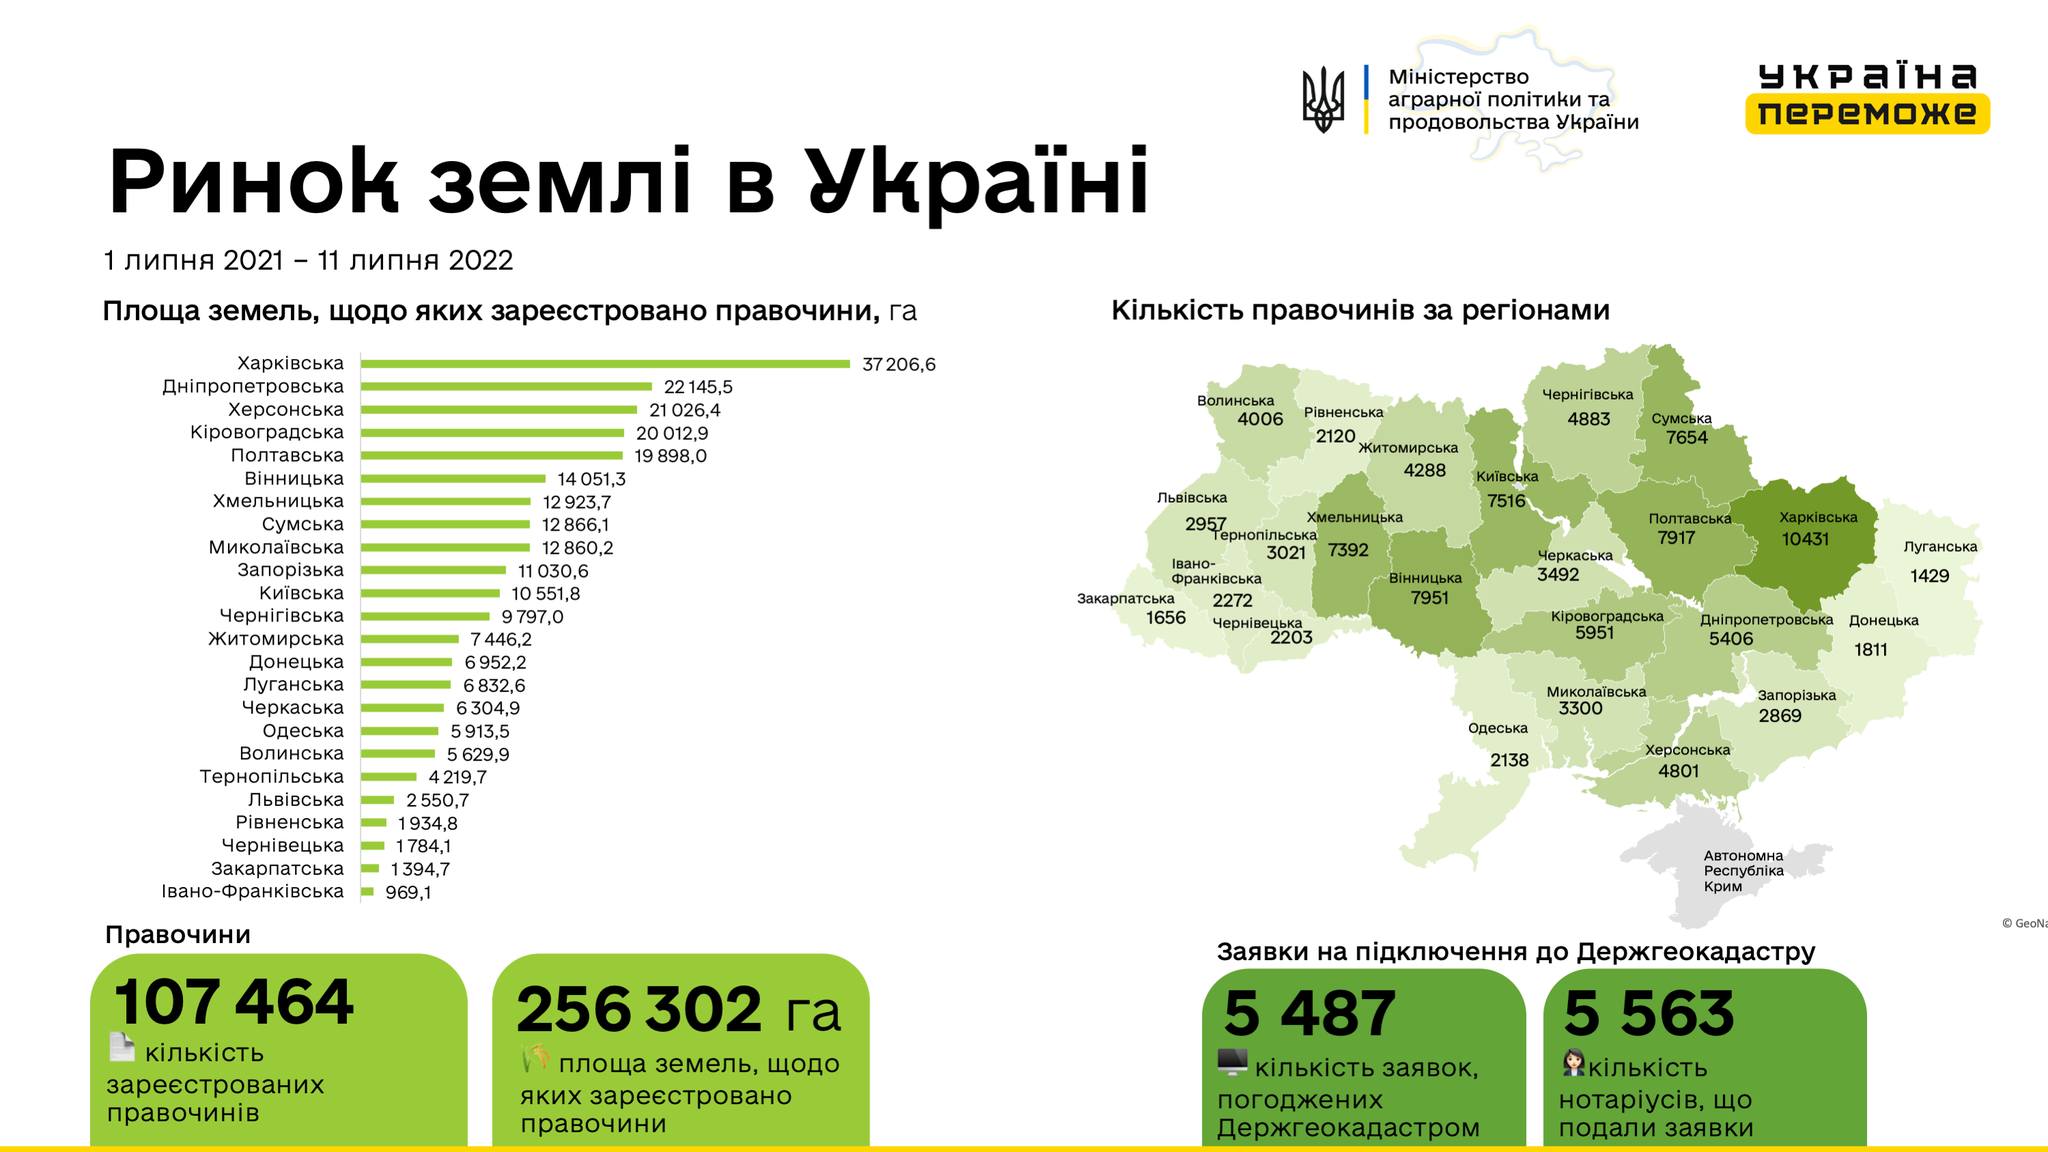 В Україні зареєстровано 107 464 земельних угоди